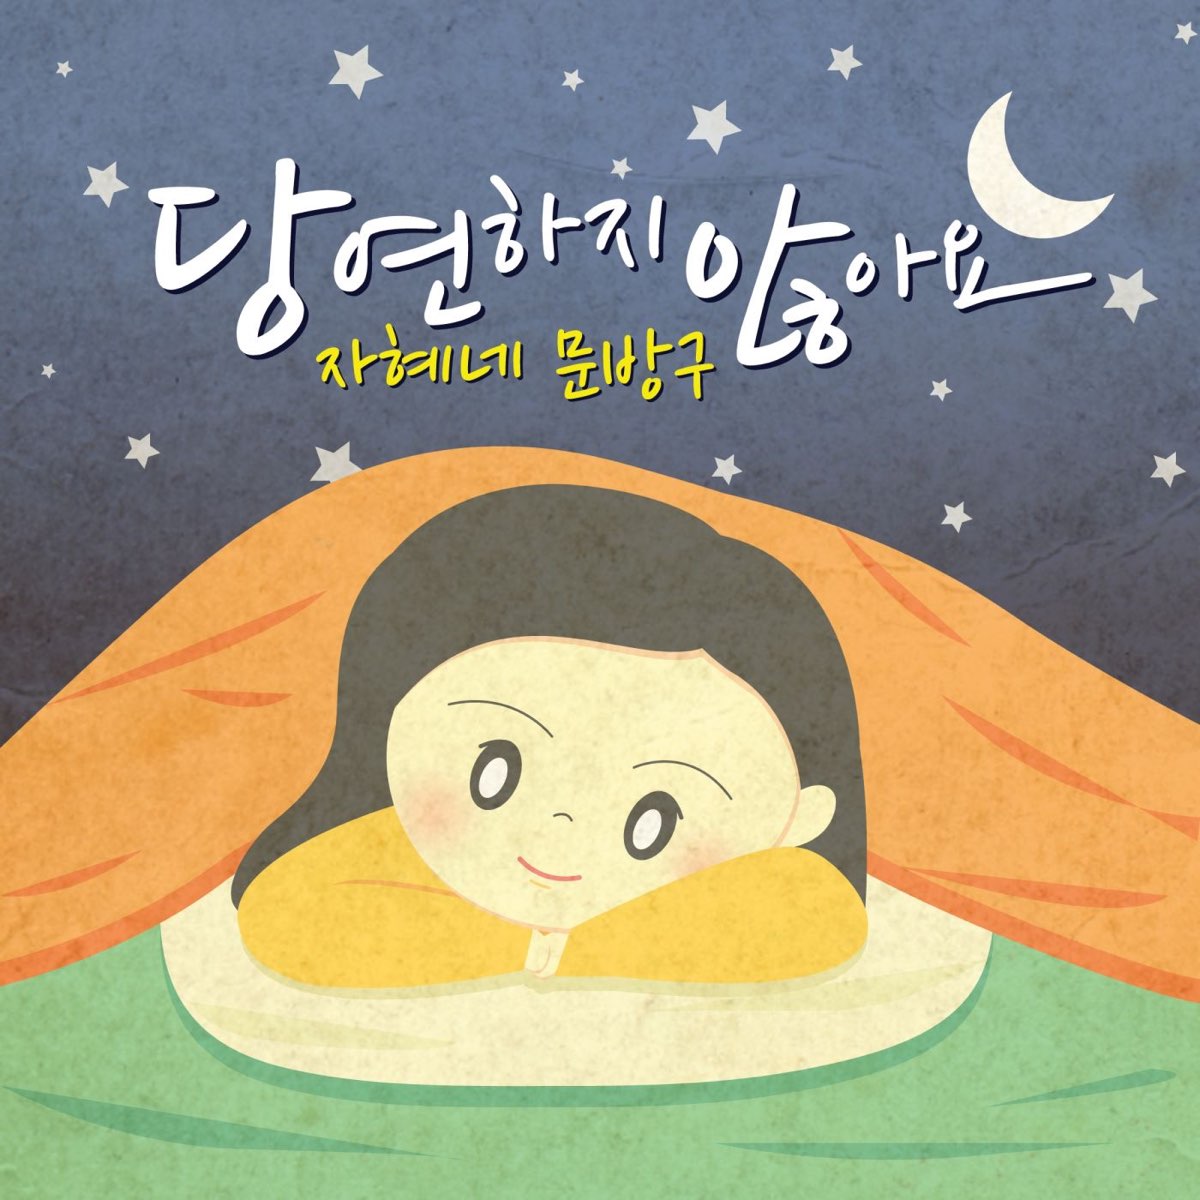 ‎당연하지 않아요 - Single by Jahye’s Moonbang9 on Apple Music